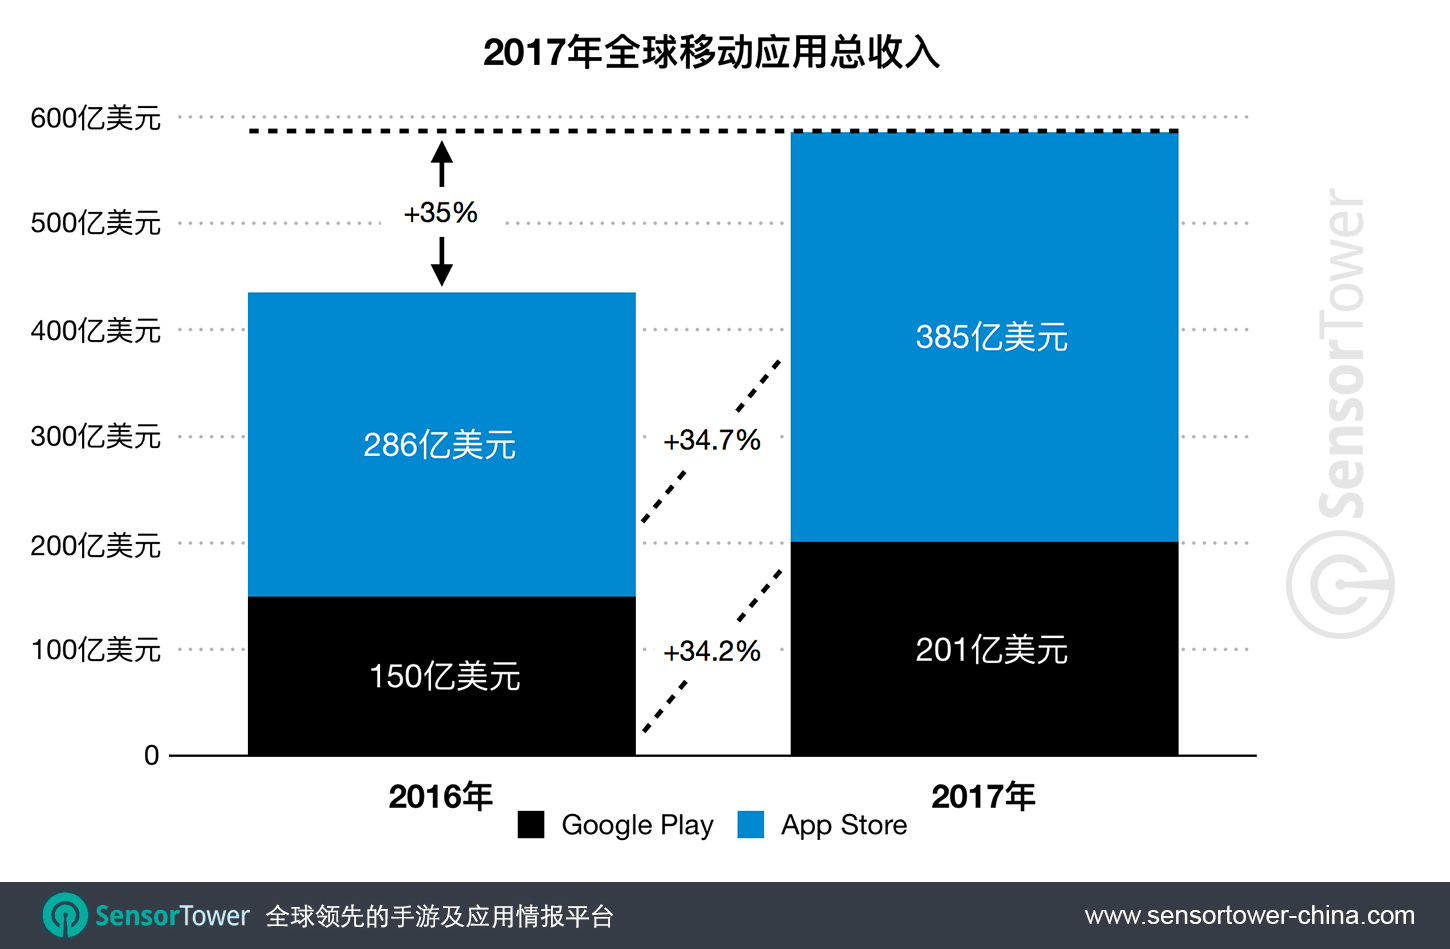 2017 Mobile App Revenue CN